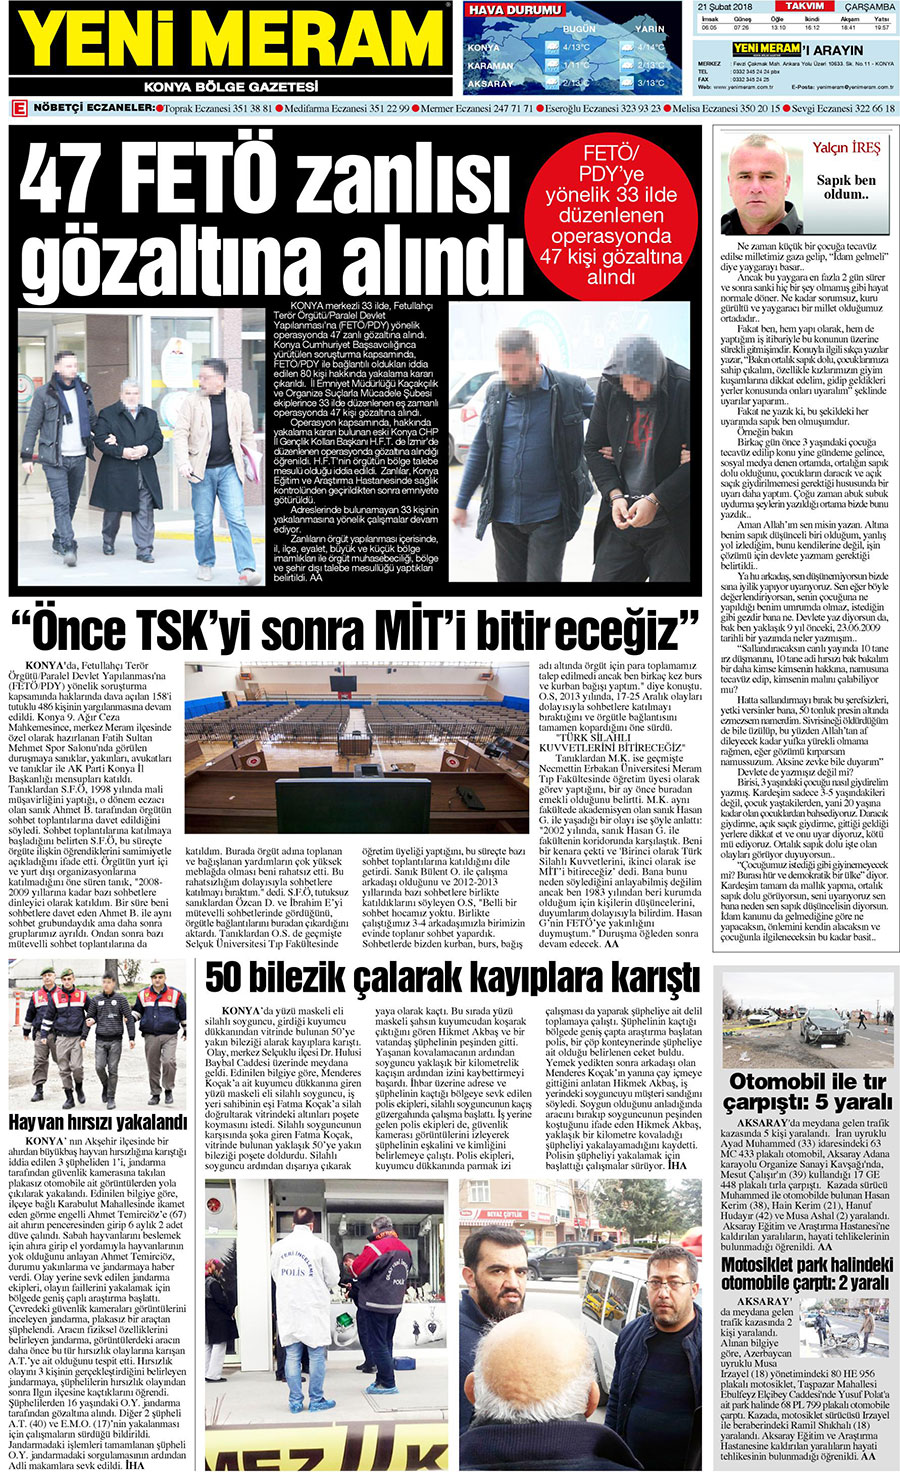 21 Şubat 2018 Yeni Meram Gazetesi